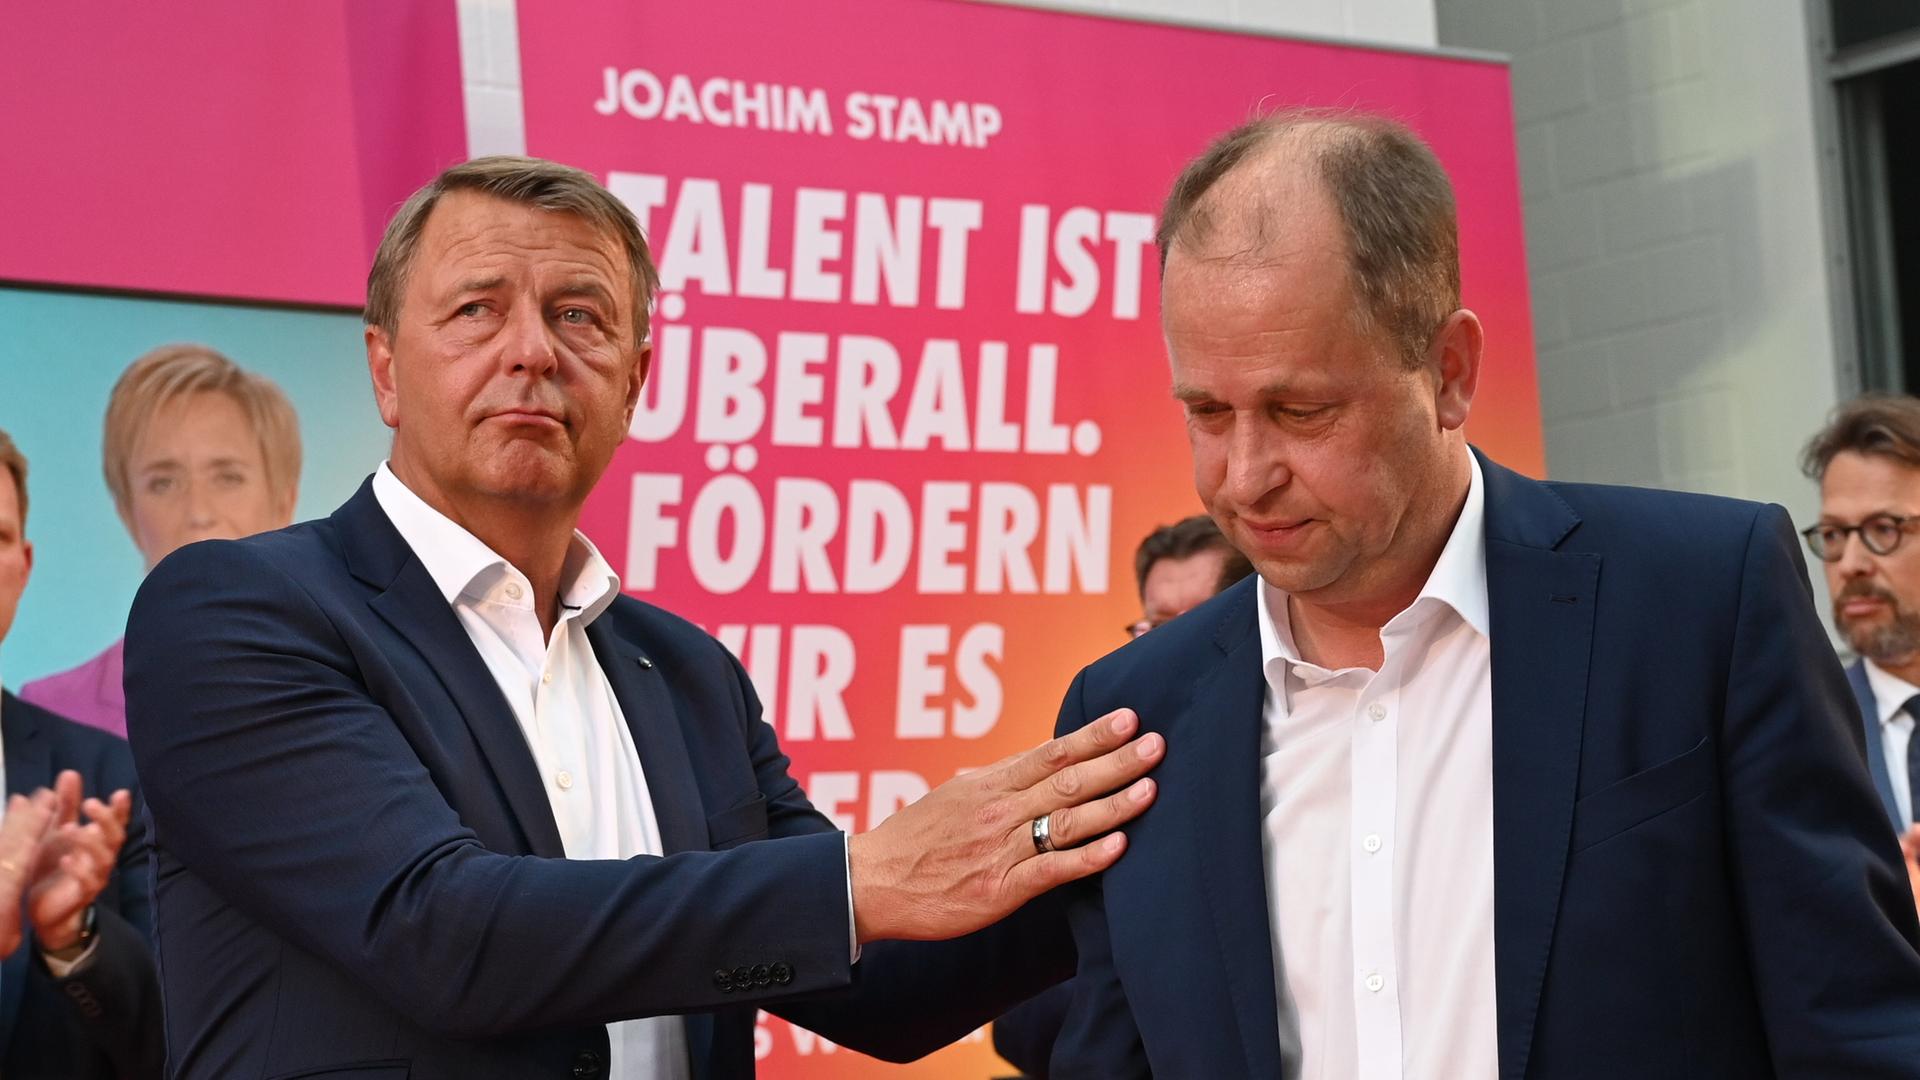 Der FDP-Spitzenkandidat für die Landtagswahl in Nordrhein-Westfalen, Joachim Stamp (r), steht bei der Wahlparty seiner Partei auf der Bühne und wird von Christof Rasche, Vorsitzender der FDP-Landtagsfraktion NRW, getröstet